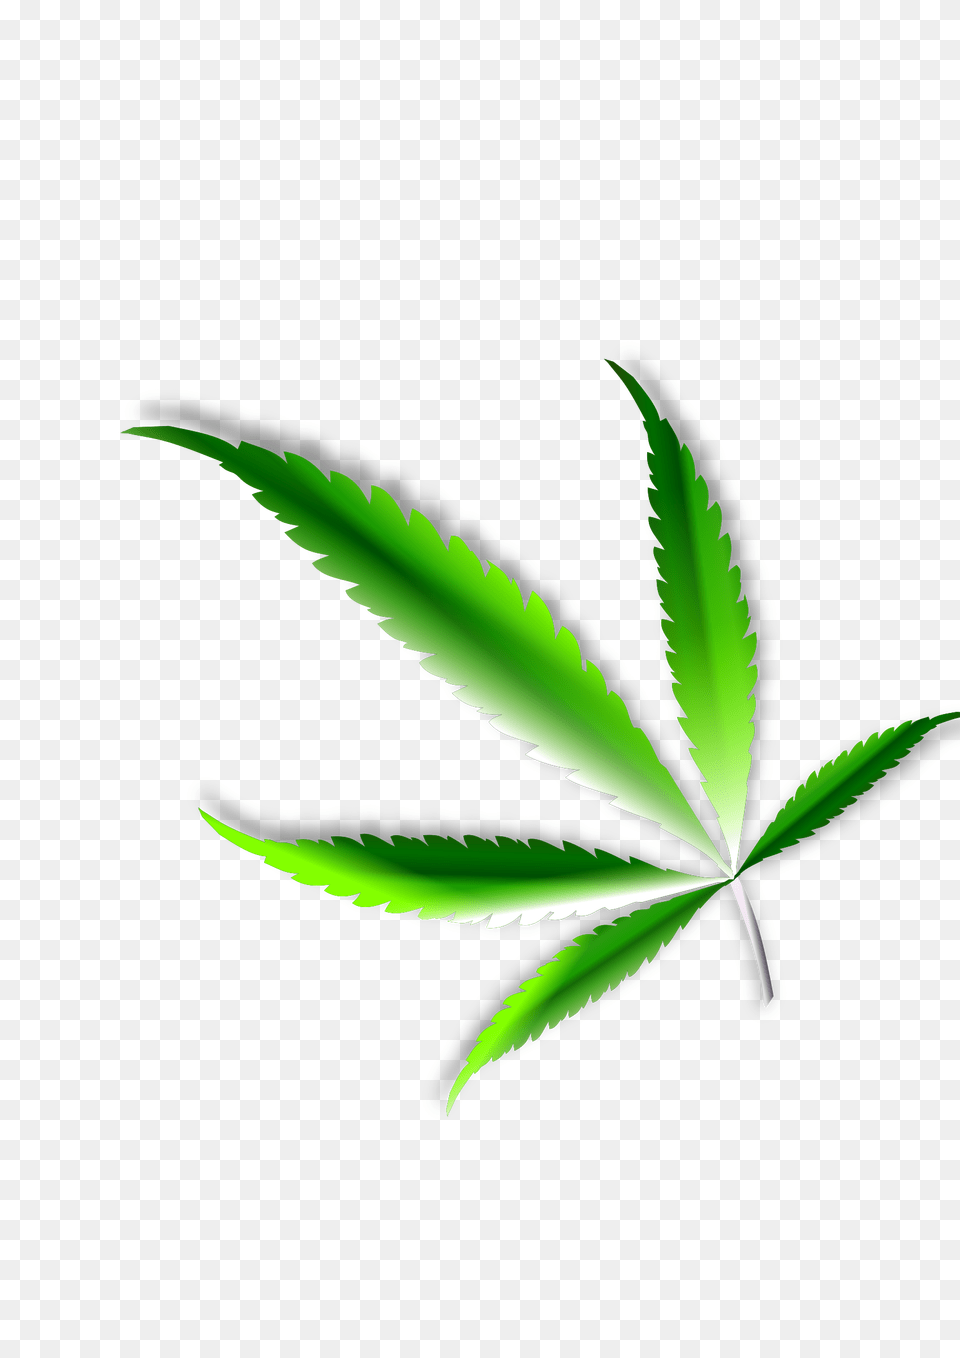 Weed Leaf Transparent Cannabis Leaf Transparency, Plant, Herbal, Herbs, Animal Free Png